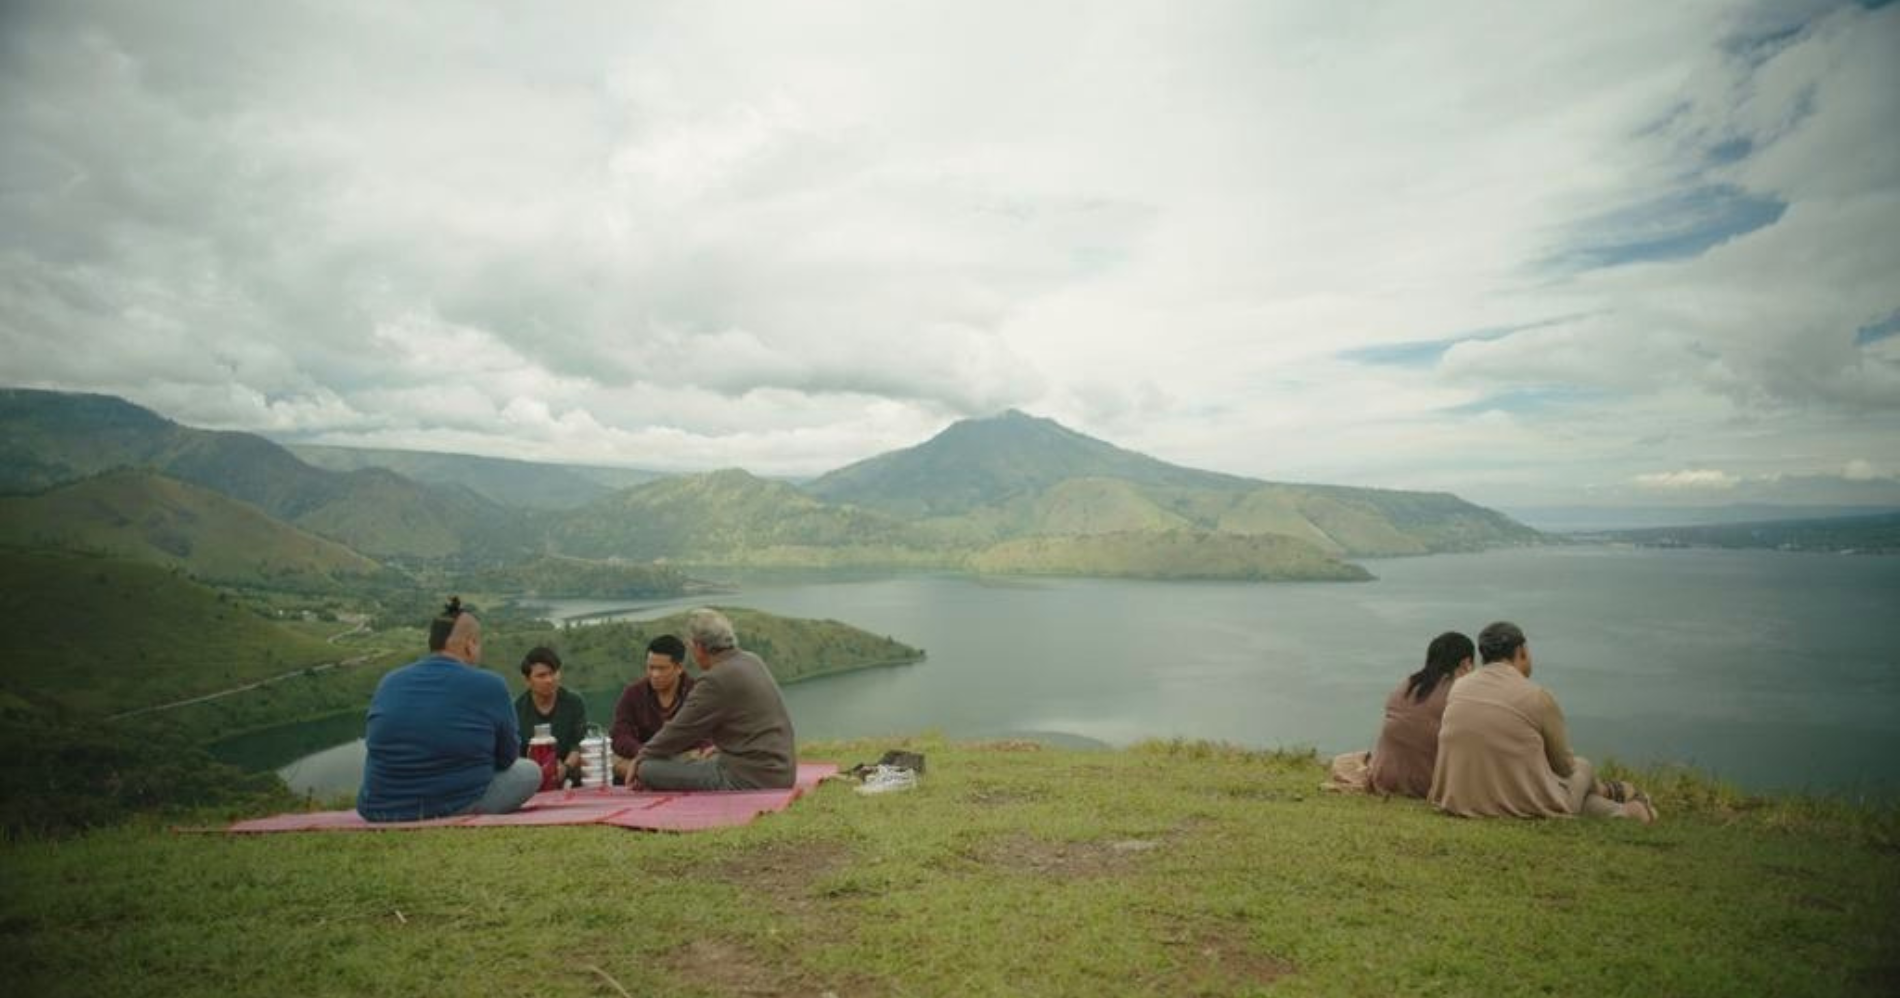 Adegan di tepi Danau Toba. (Sumber gambar: Trailer Film Ngeri-Ngeri Sedap)